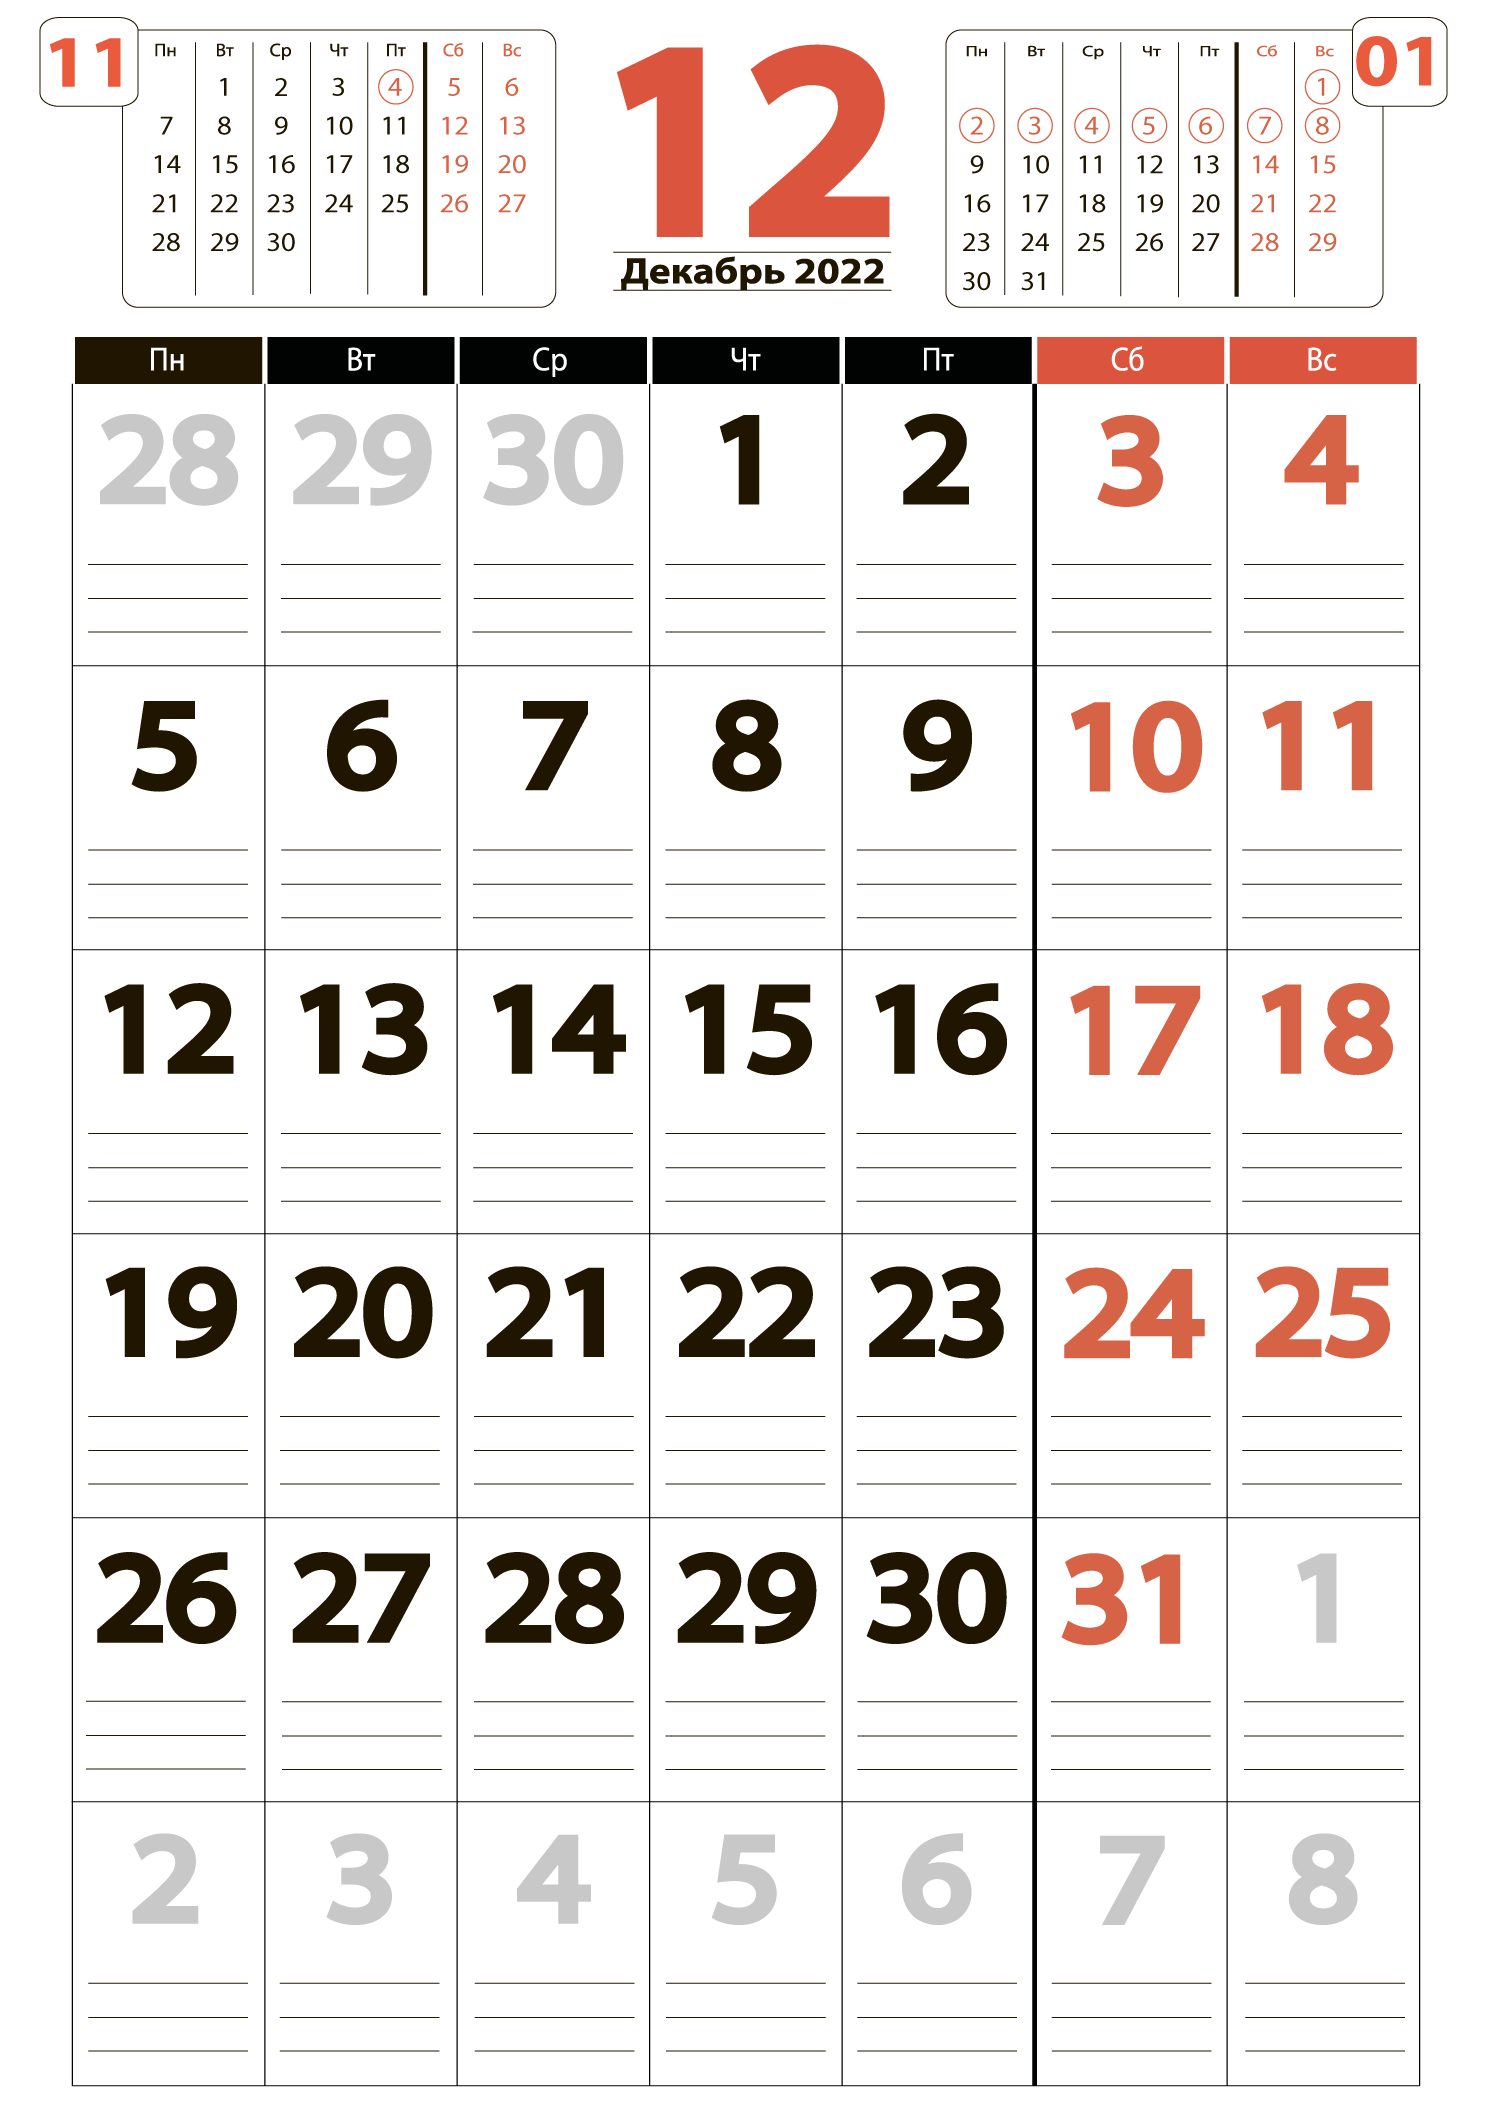 Печать крупного календаря на декабрь 2022